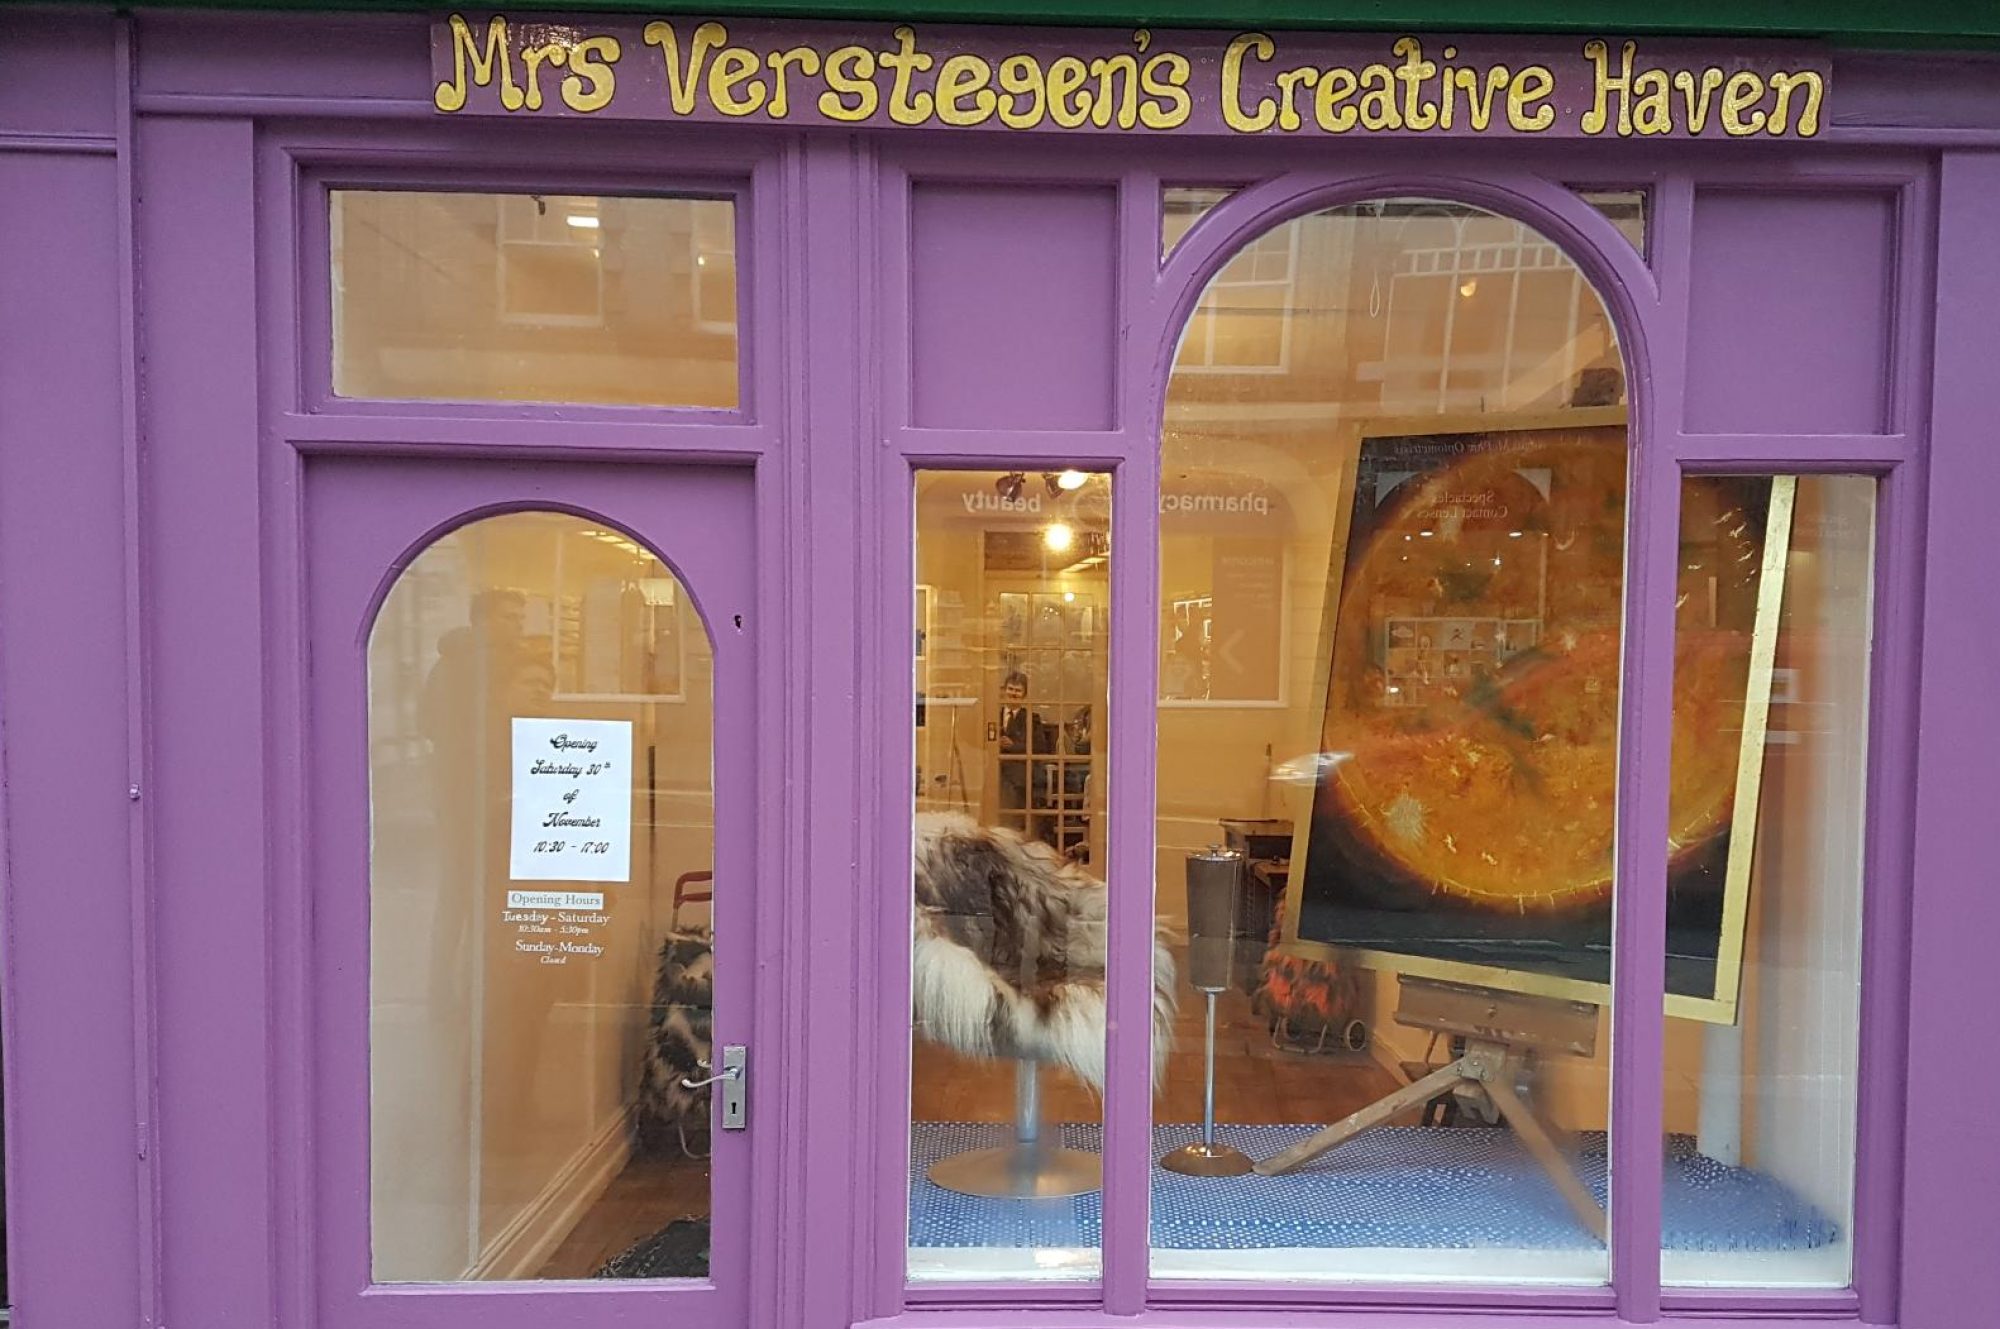 Mrs Verstegen's Creative Haven